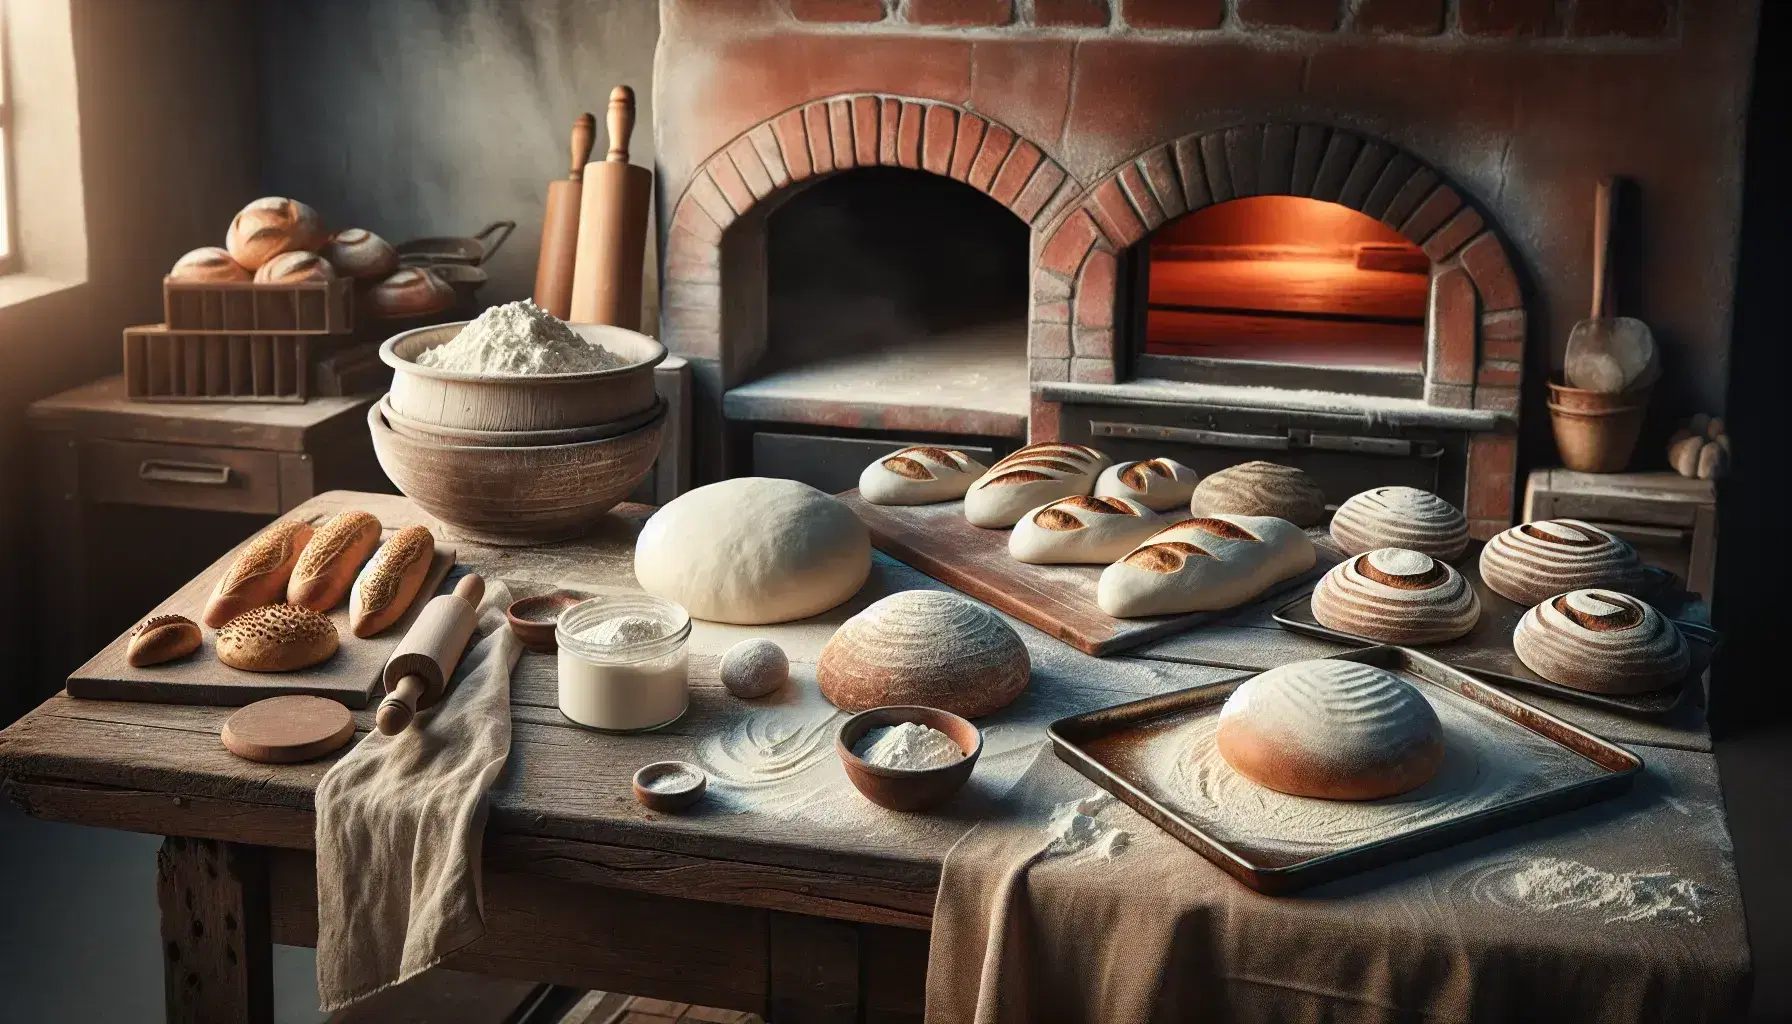 Escena de panadería artesanal con masa en diferentes etapas sobre mesa de madera, horno de ladrillo al fondo y panes horneados en estantería.